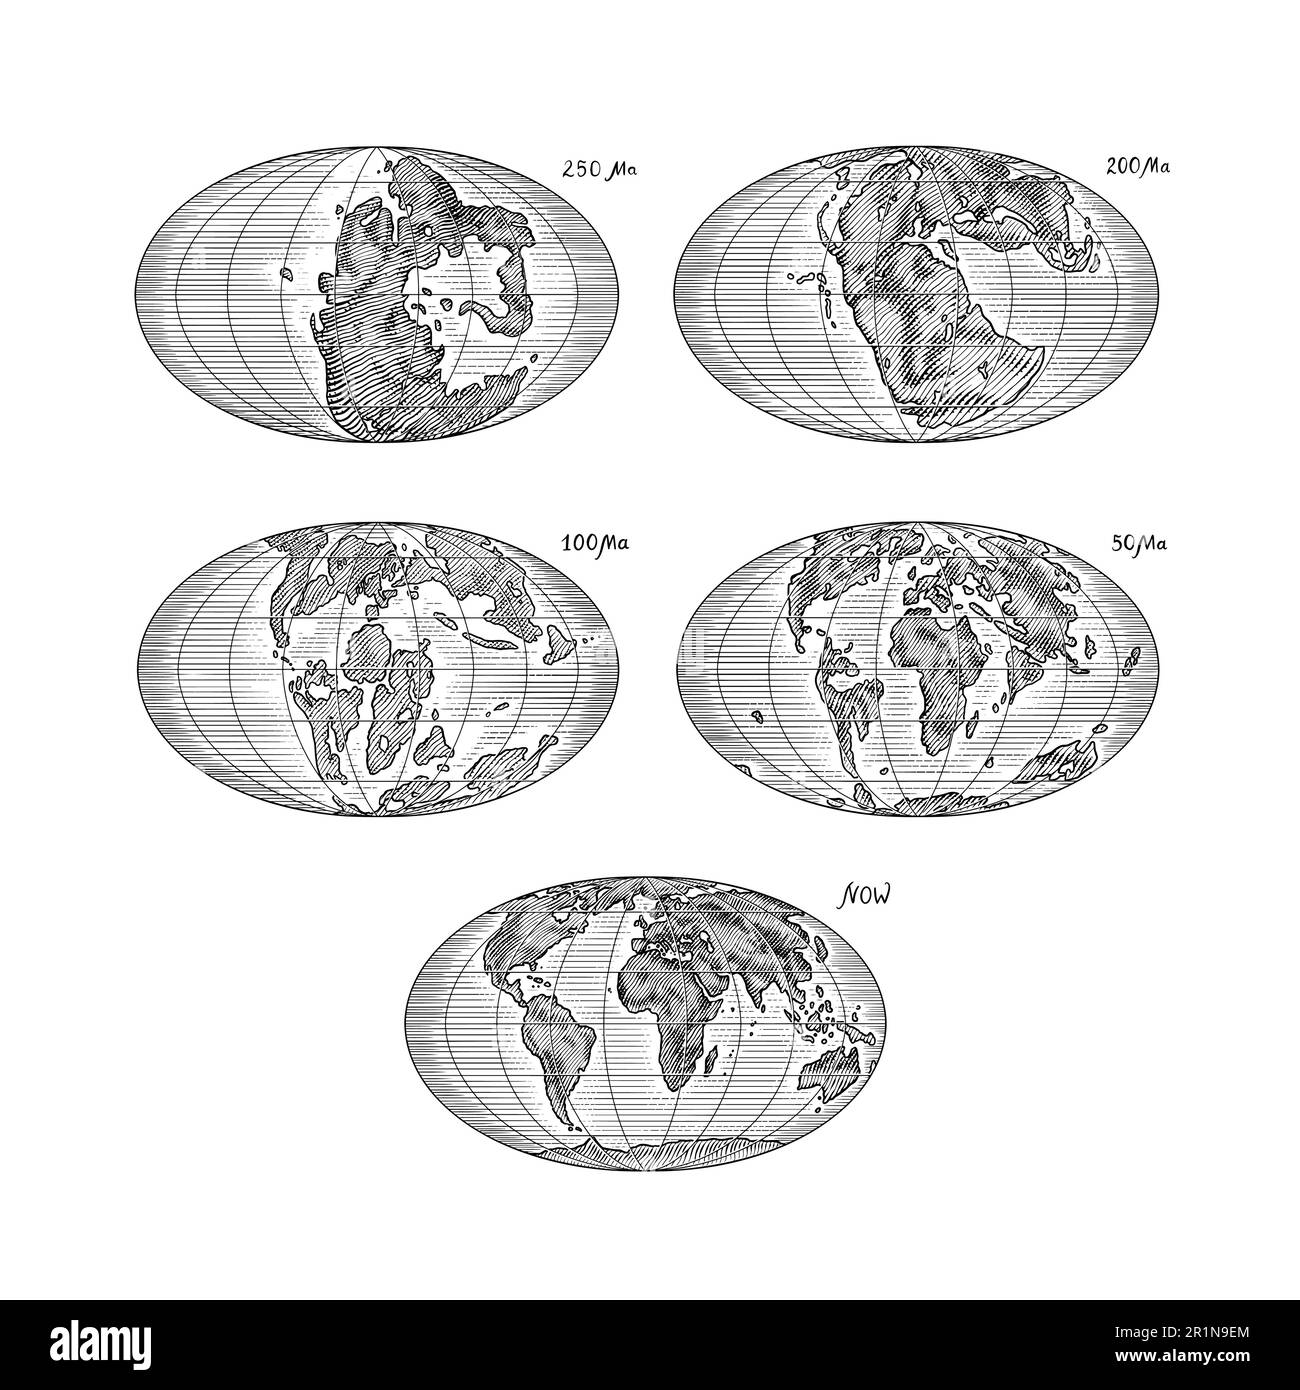 Plaque tectonique sur la planète Terre. Pangée. Dérive continentale. Supercontinent à 250 Ma. Époque des dinosaures. Période jurassique. Mésozoïque. Dessiné à la main Illustration de Vecteur